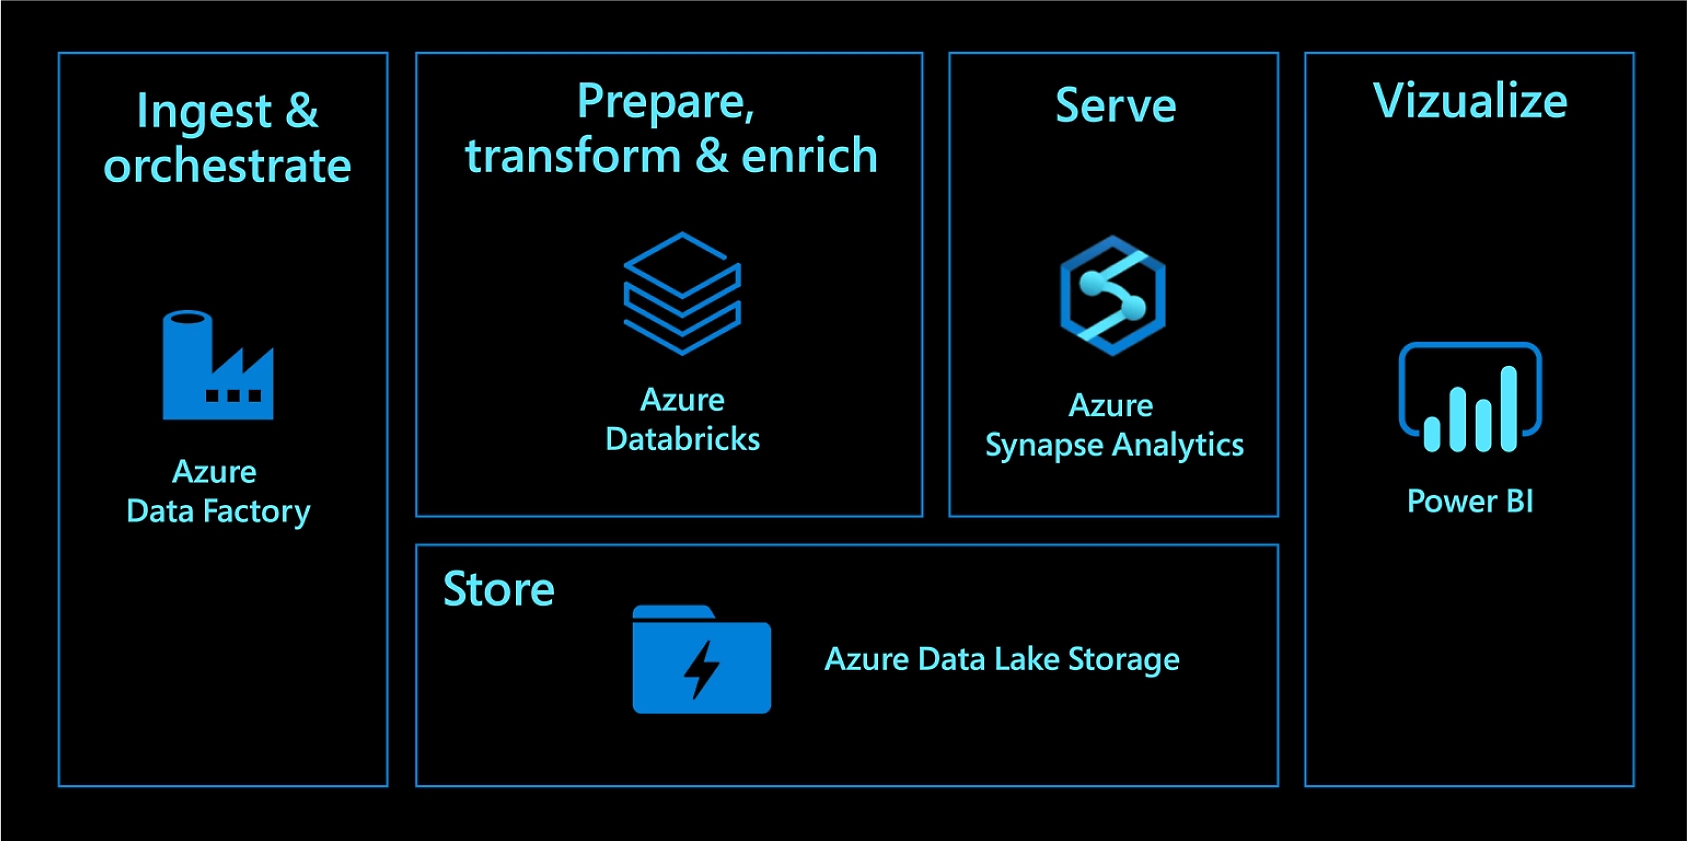 Ingesta y orquestación con Azure Data Factory. Preparación, transformación y enriquecimiento con Azure Databricks. Servicio con Azure Synapse Analytics. Almacenamiento con Azure Data Lake Storage. Visualización con Power BI.